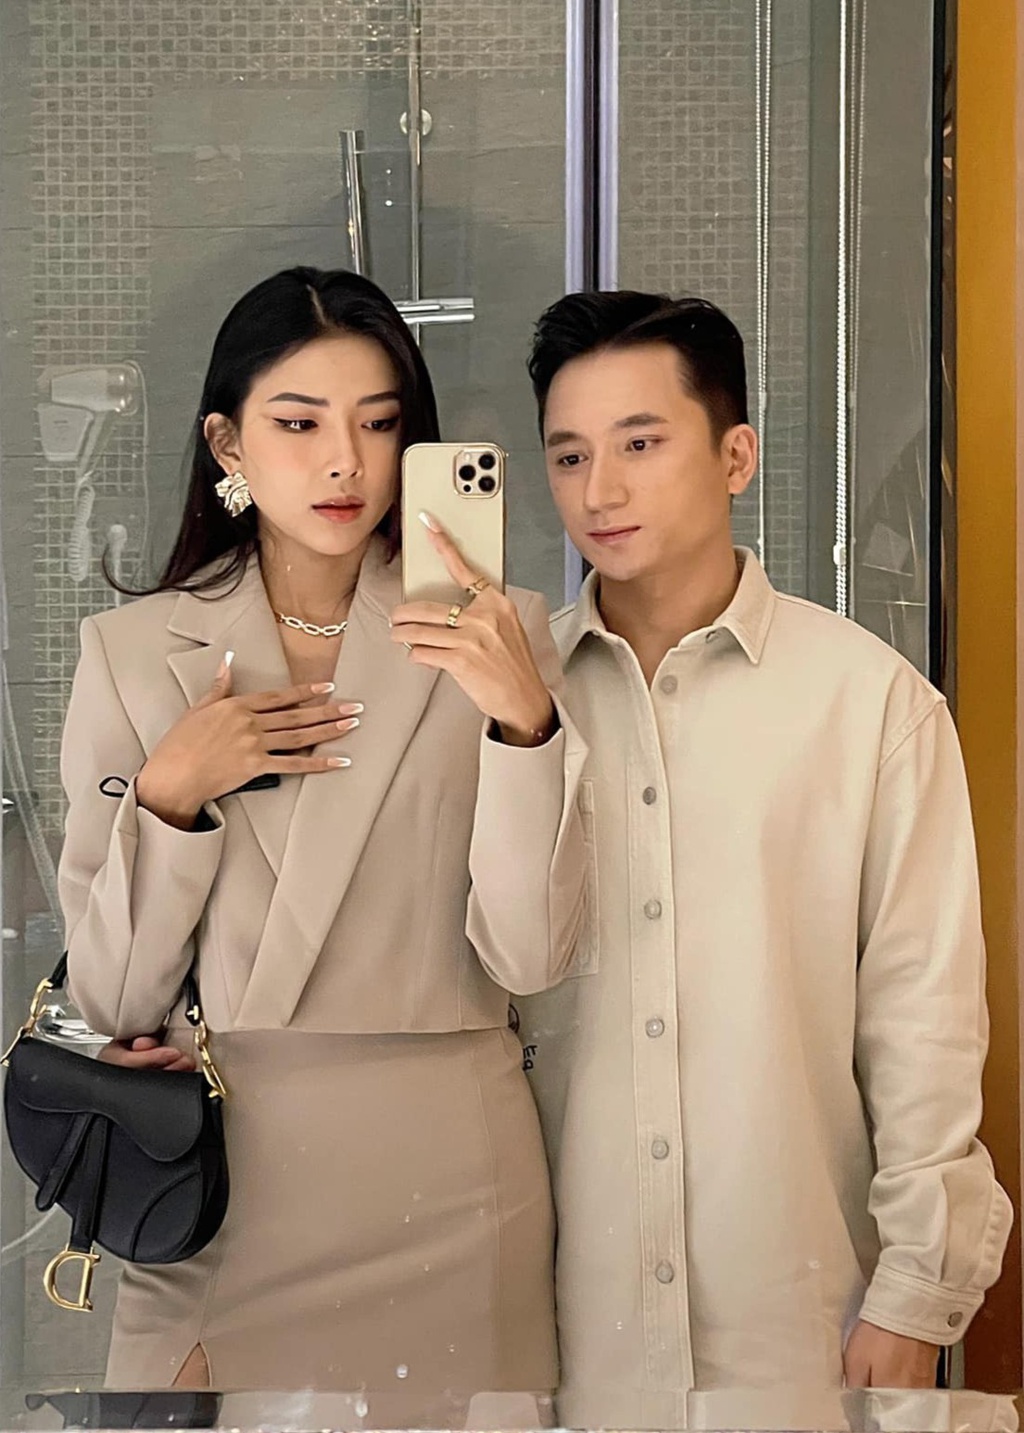 Vợ sắp cưới của Phan Mạnh Quỳnh: Mặt xinh, dáng đẹp lại giỏi kiếm tiền - Ảnh 8